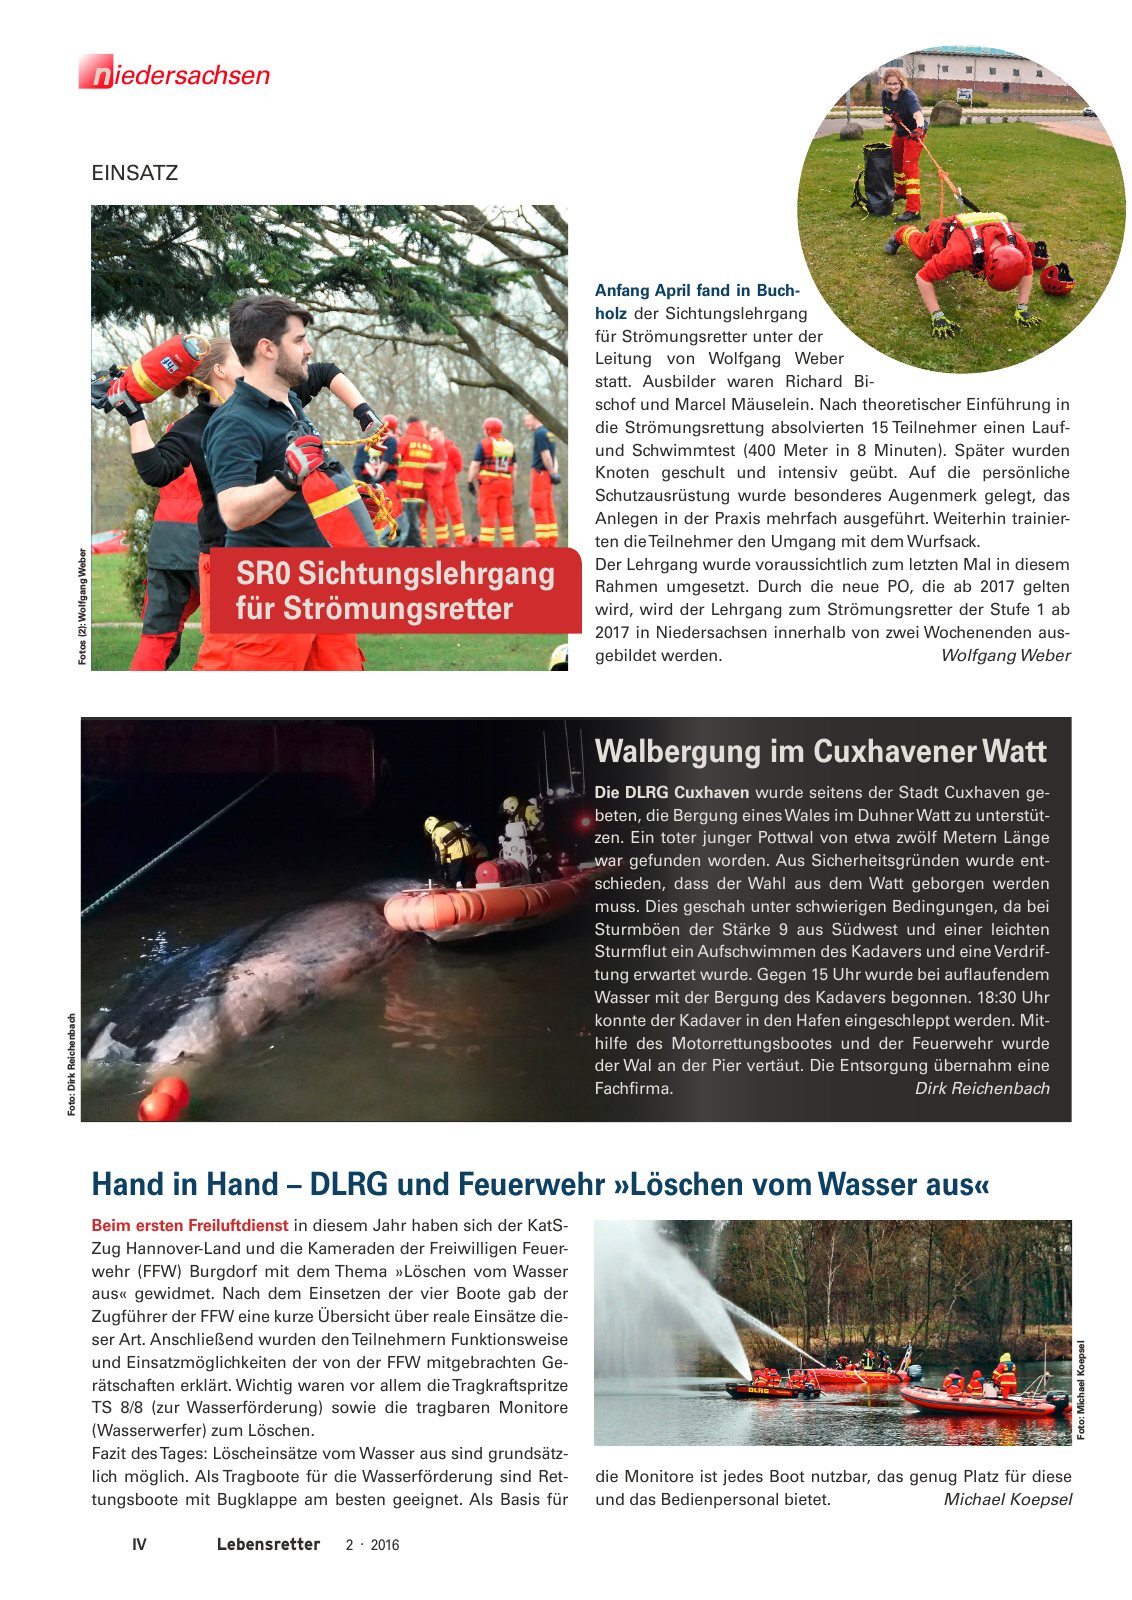 Vorschau Lebensretter 2/2016 - Regionalausgabe Niedersachsen Seite 6